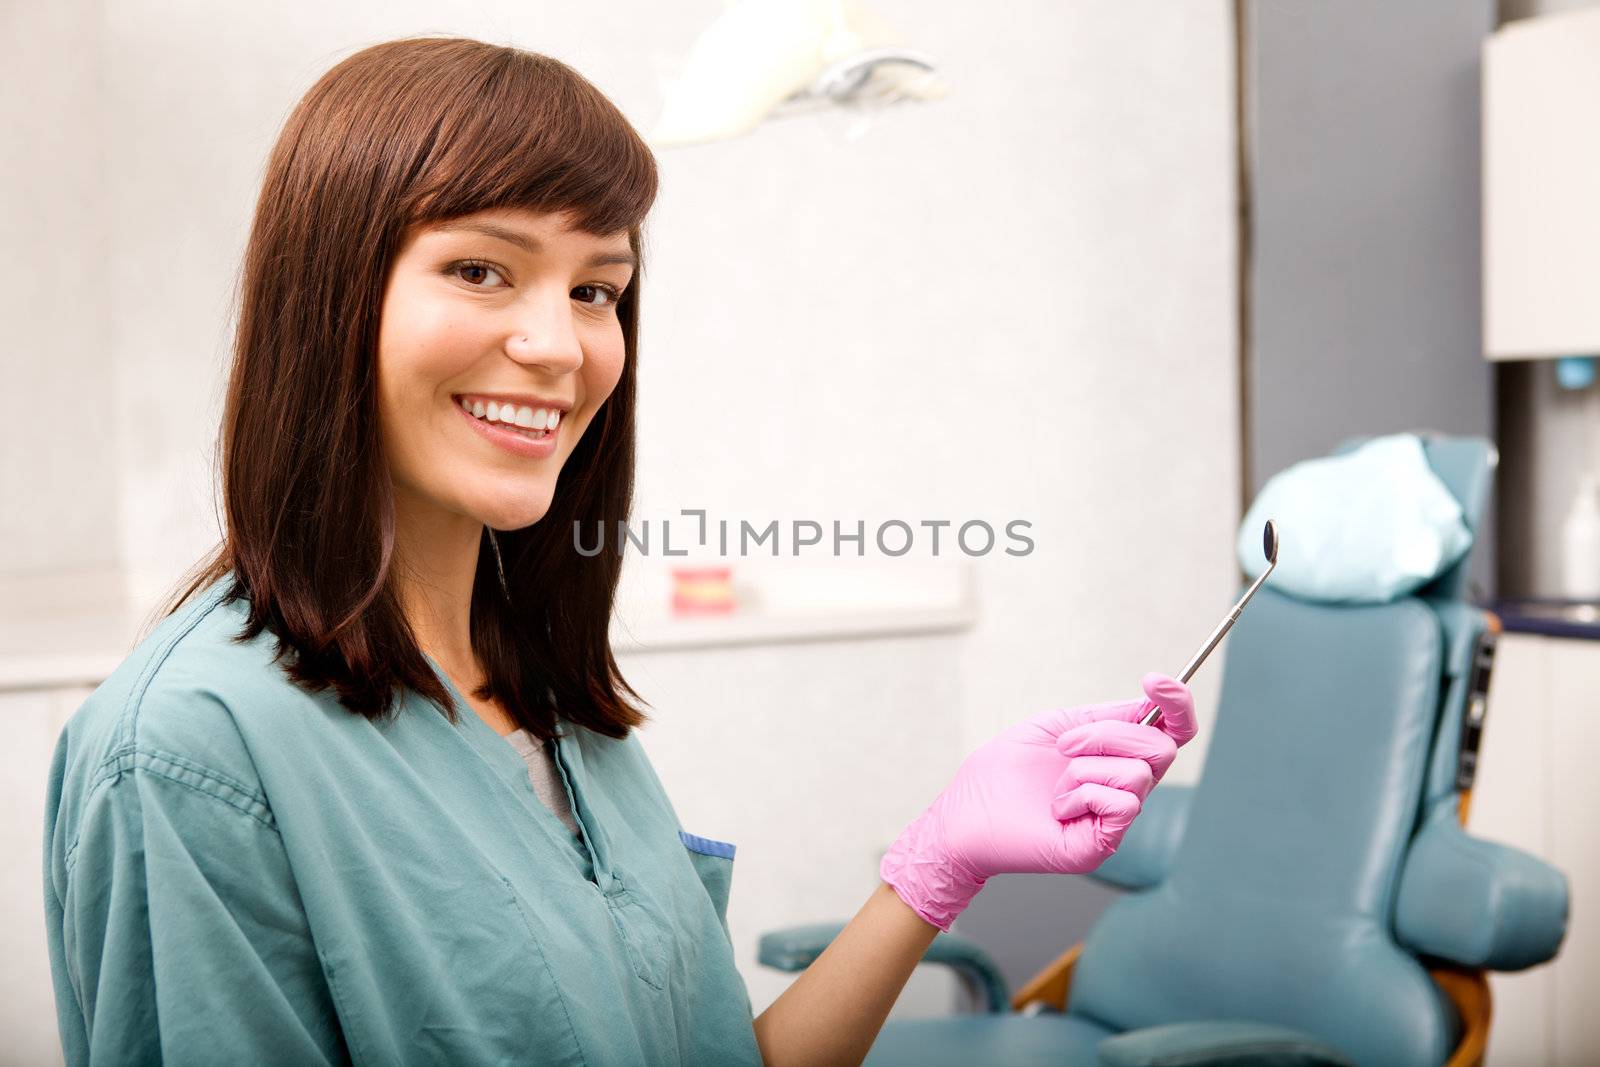 A woman dentist or dental hygienist portrait